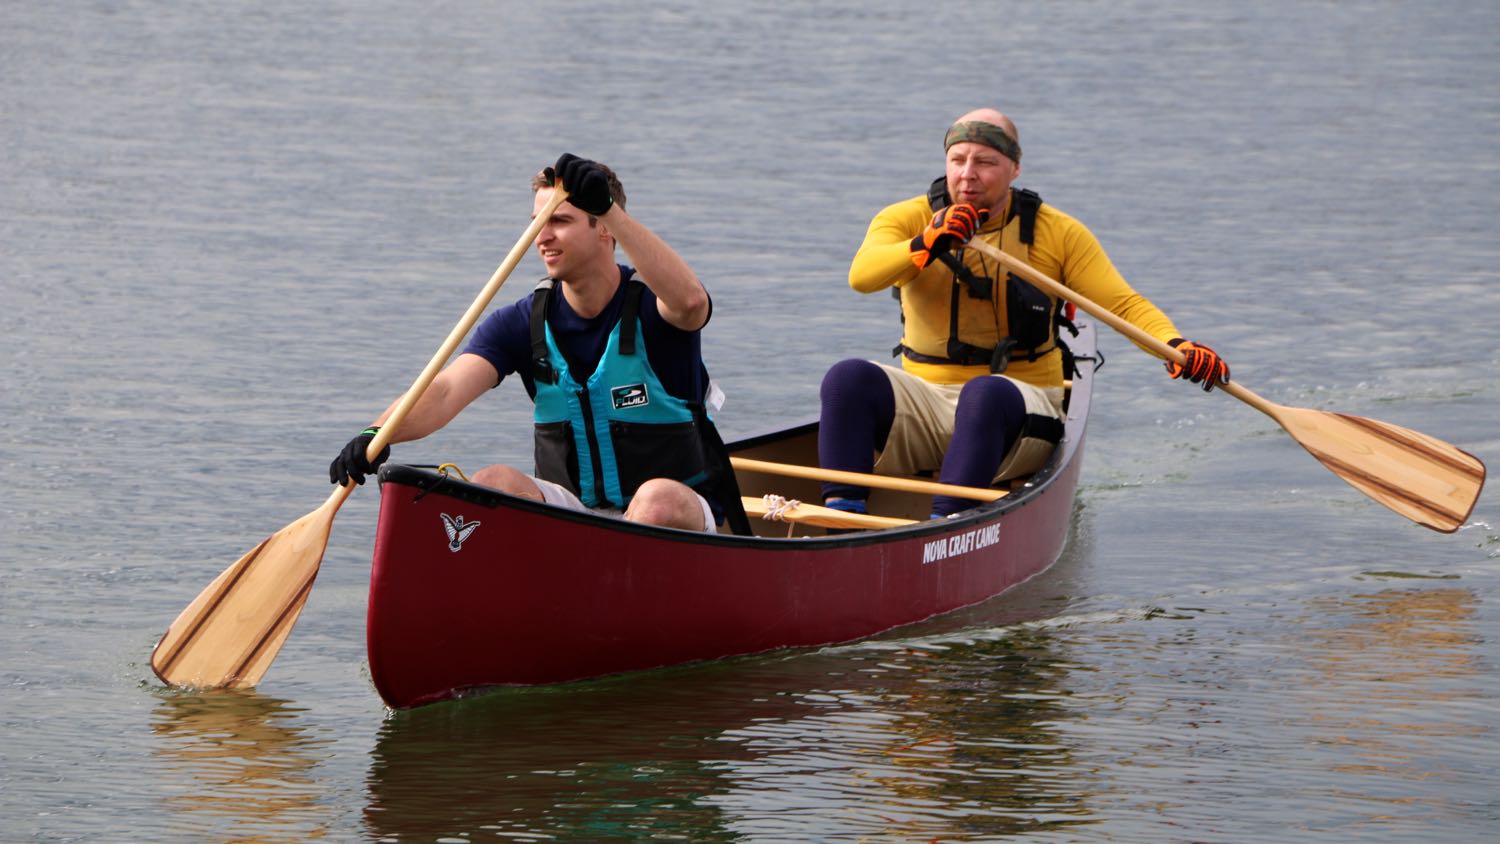 Latham Island Paddle Race 2015